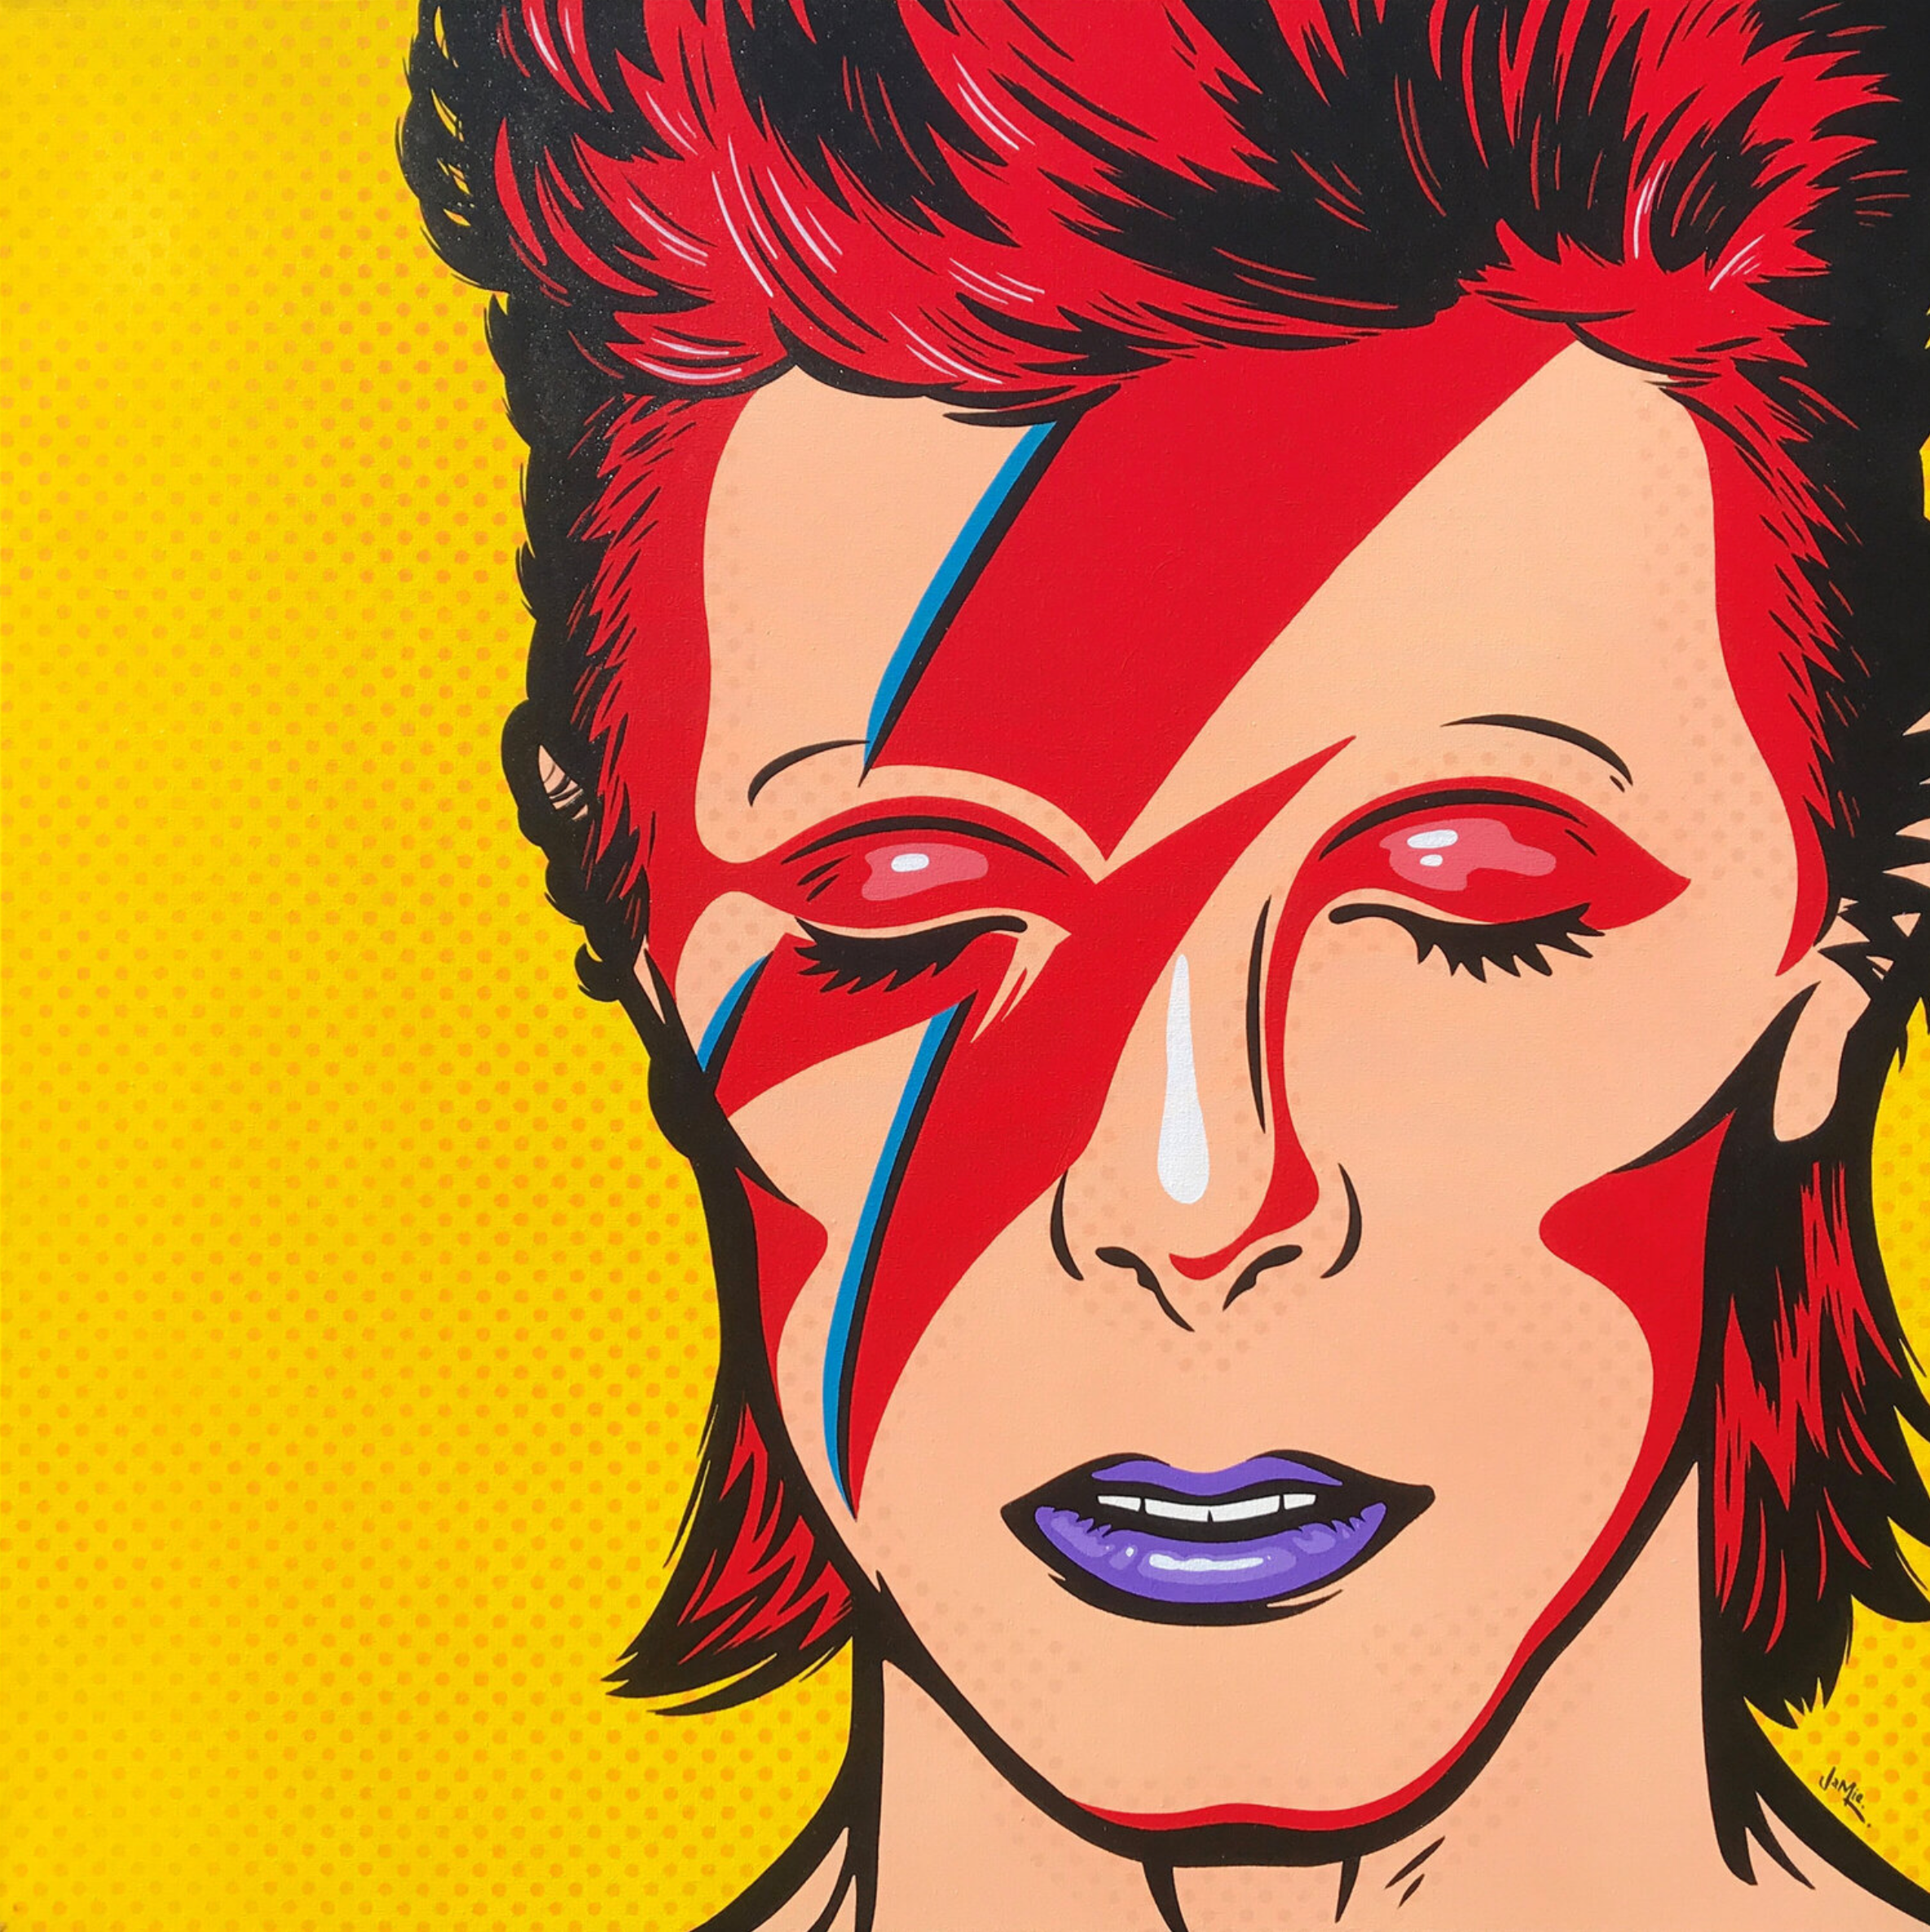 Pintura pop art "David Bowie" de Jamie Lee en estilo cómic con diseño original. David Bowie como Aladdin Sane sobre un fondo de puntos amarillos. Versión pop art pintada a mano en estilo cómic de la legendaria imagen de la portada del álbum.